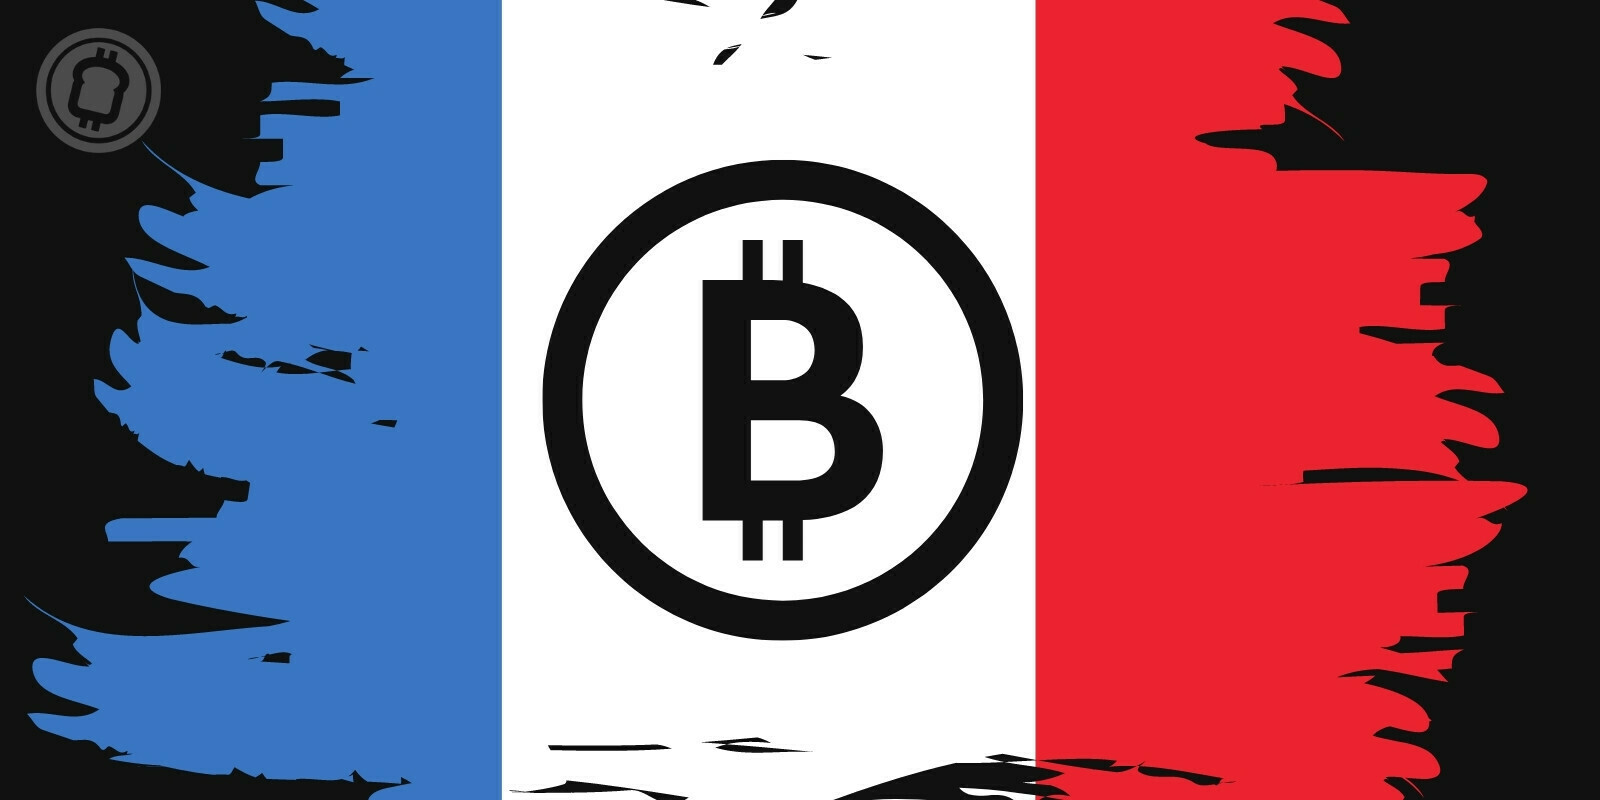 Plus de 50% des Français de 18-25 ans sont intéressés par les cryptomonnaies et les tokens non fongibles (NFT)